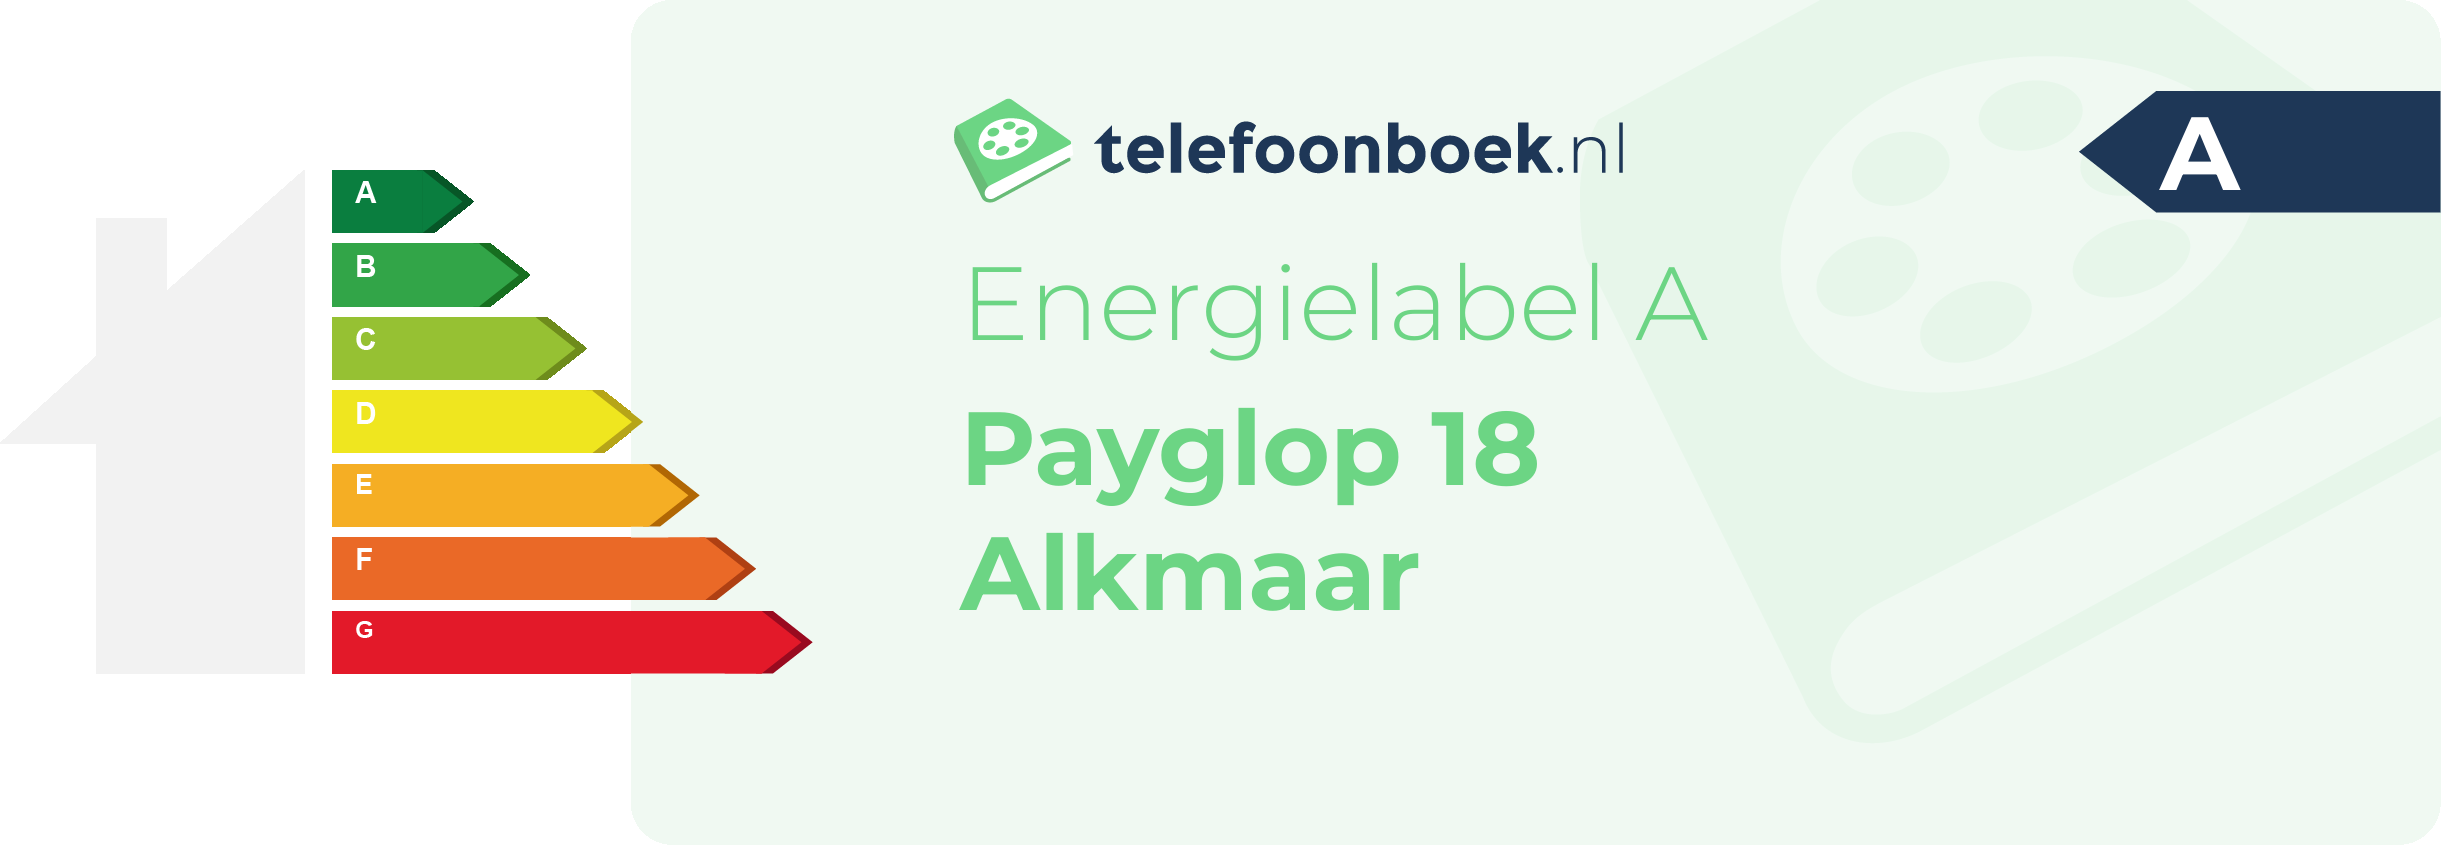 Energielabel Payglop 18 Alkmaar